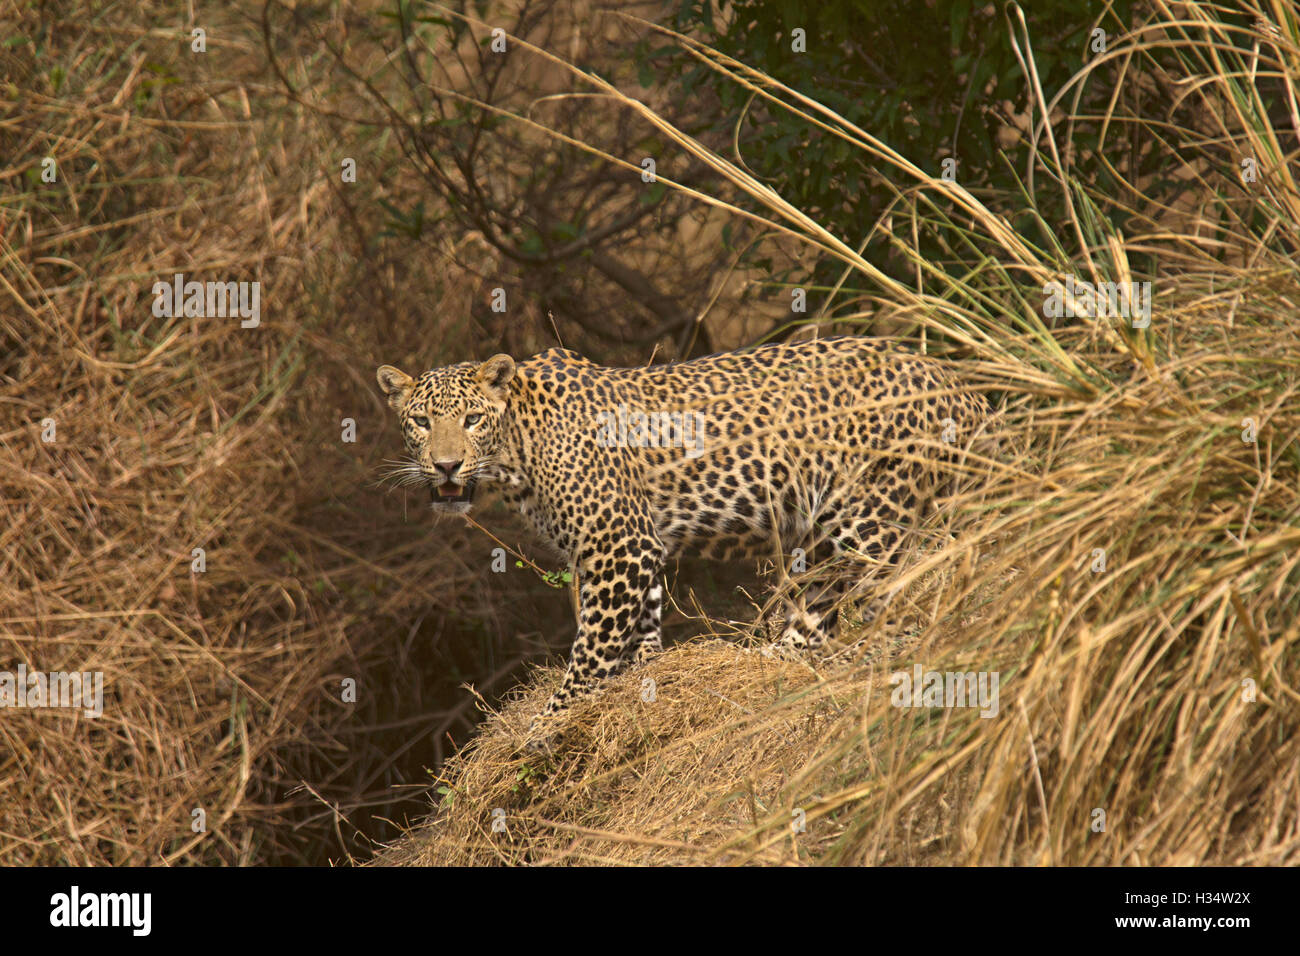 Indian léopard, Panthera pardus fusca, panna tiger reserve, Madhya Pradesh, Inde Banque D'Images